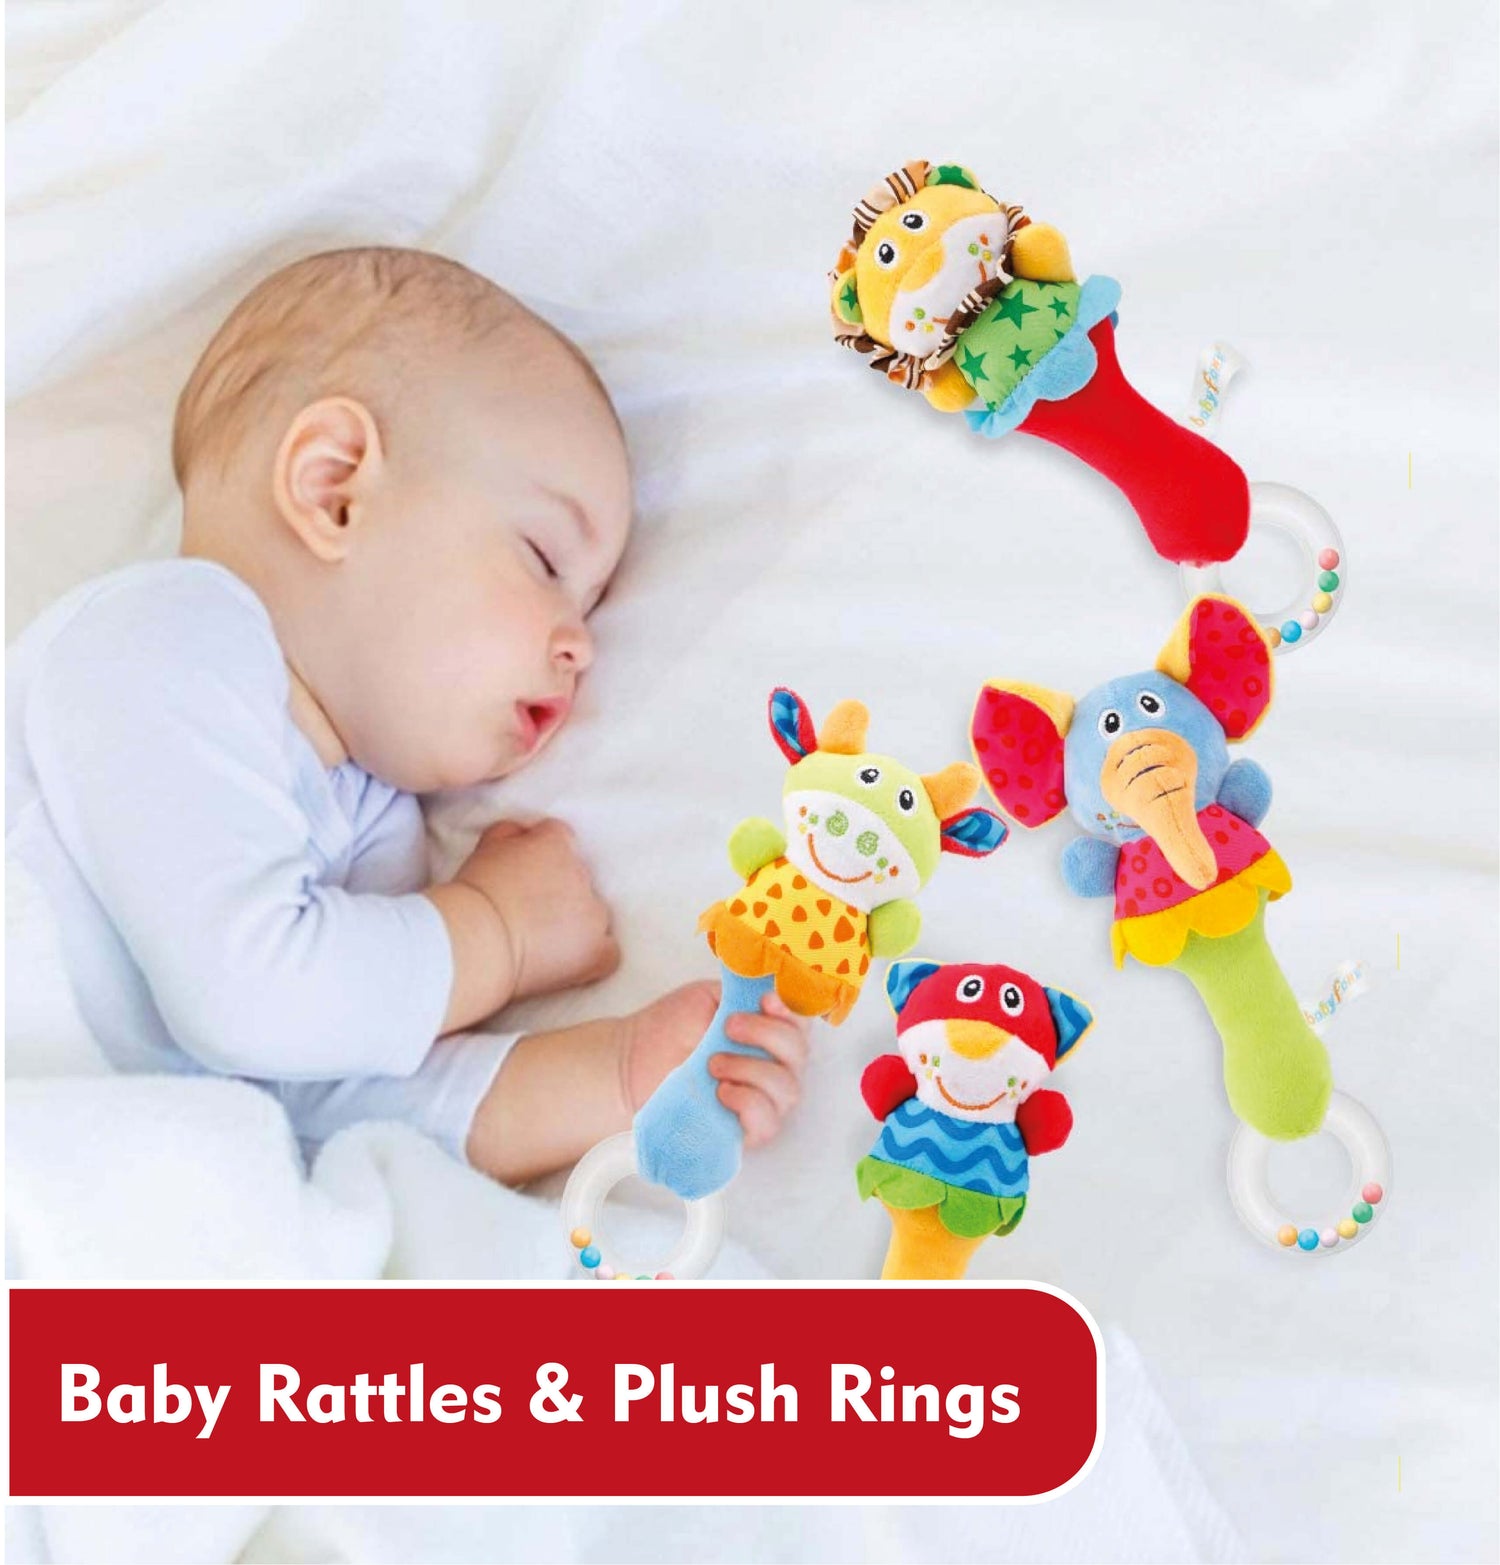 Baby Rattles & Plush Rings